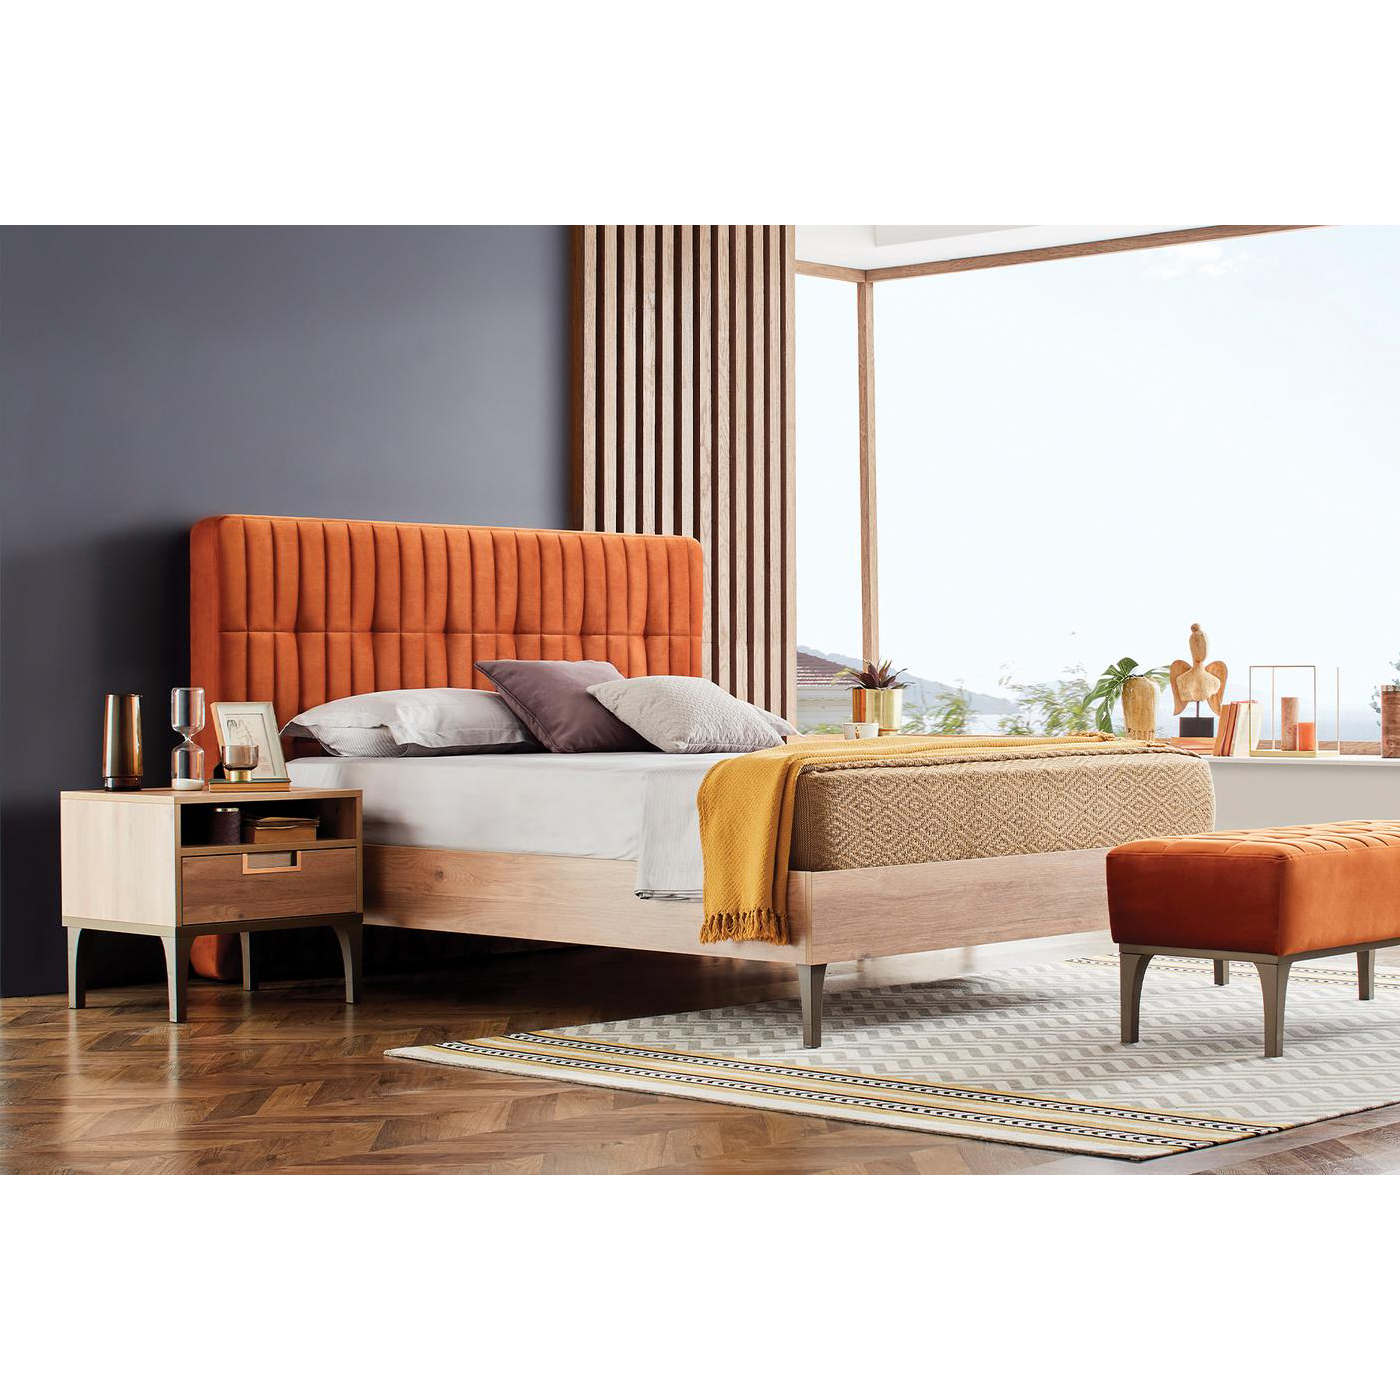 Кровать Enza Home Sona, двуспальная, 200х200 см